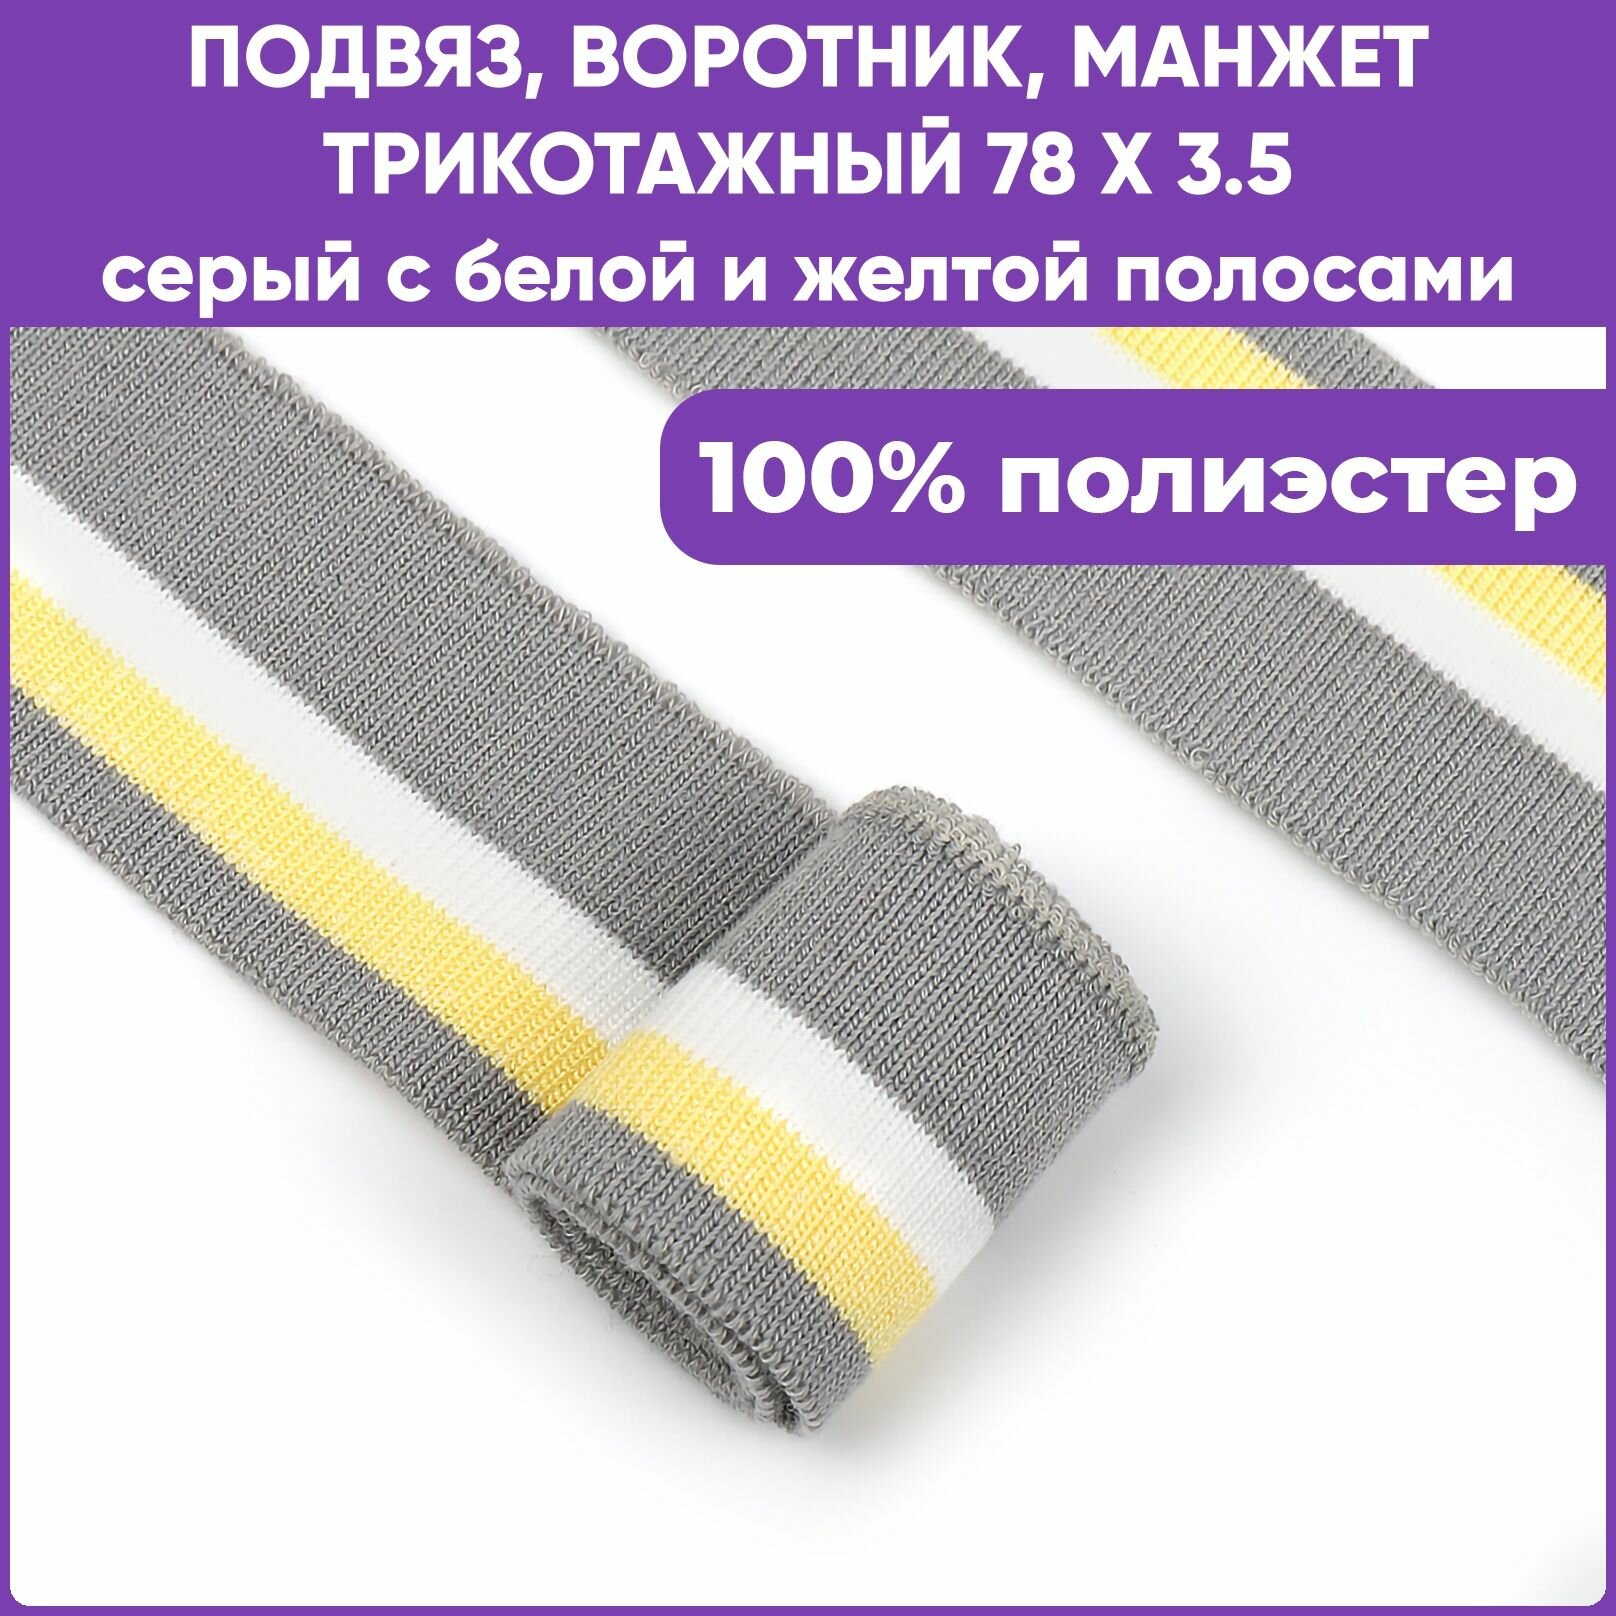 Подвяз трикотажный, воротник, манжета для шитья, цвет Серый с белой и жёлтой полосами, 78 х 3.5см